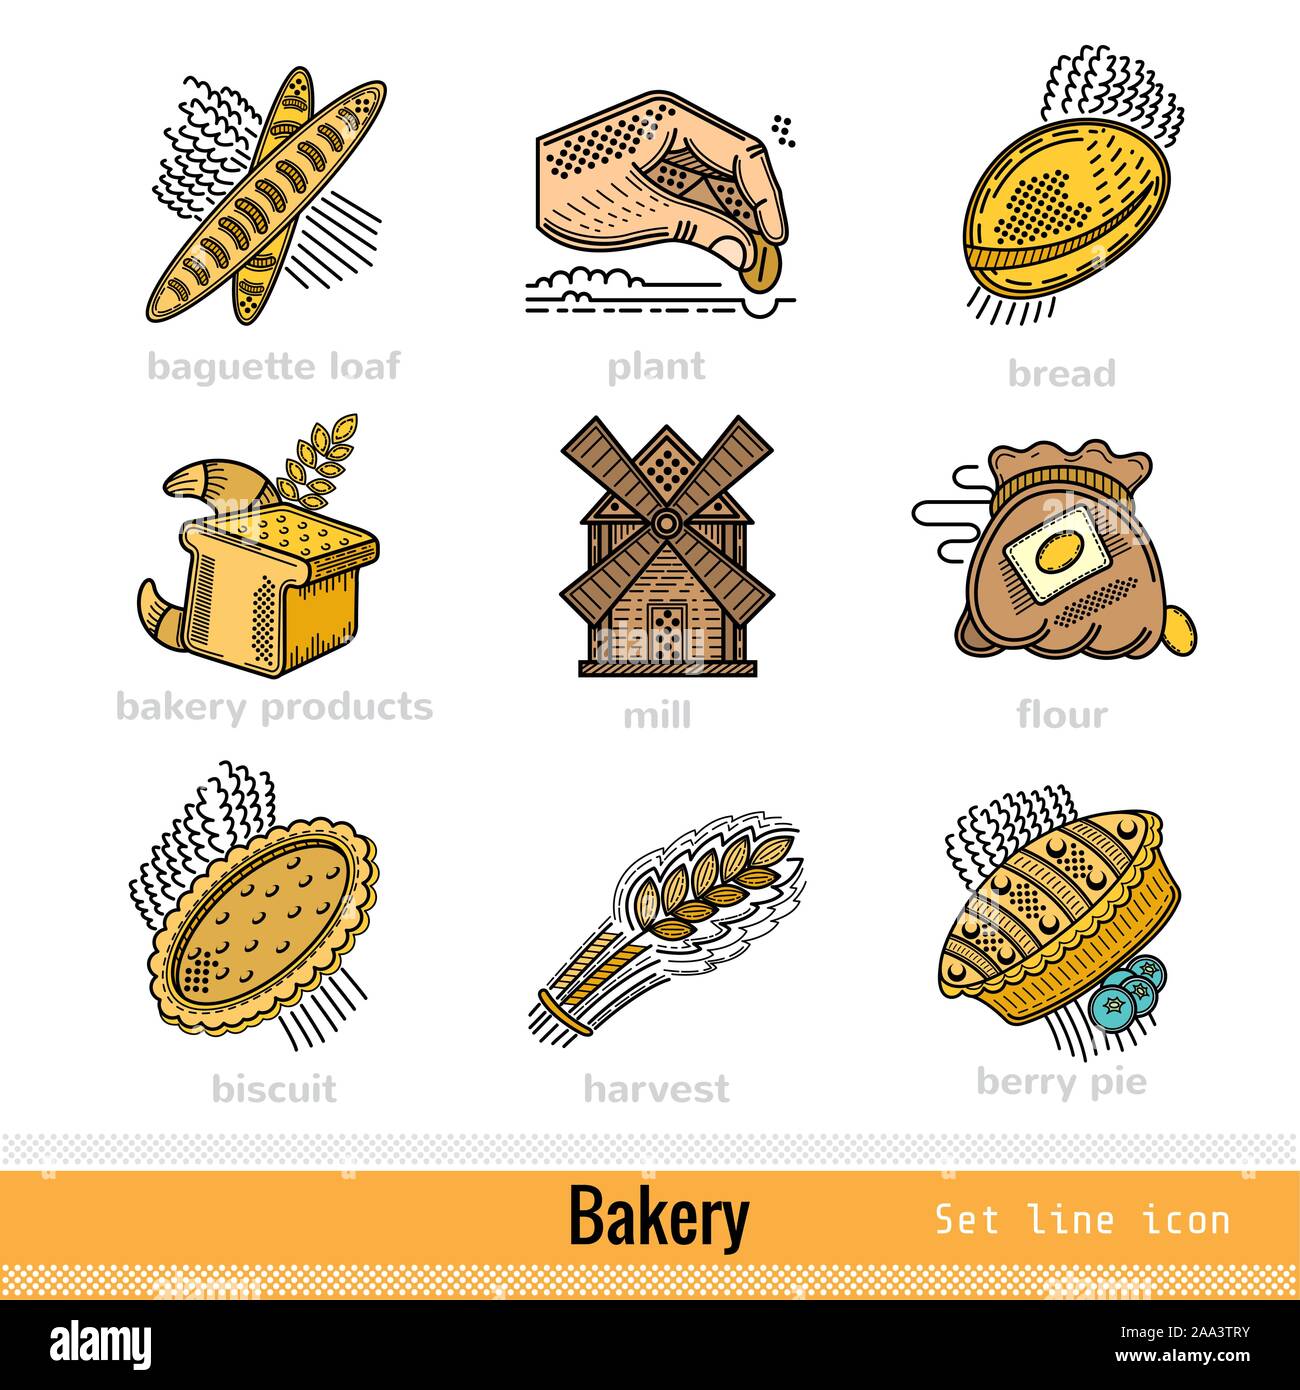 Satz von Bäckerei und Bäckerei Produktumriss Web Icons auf Weiß Stock Vektor